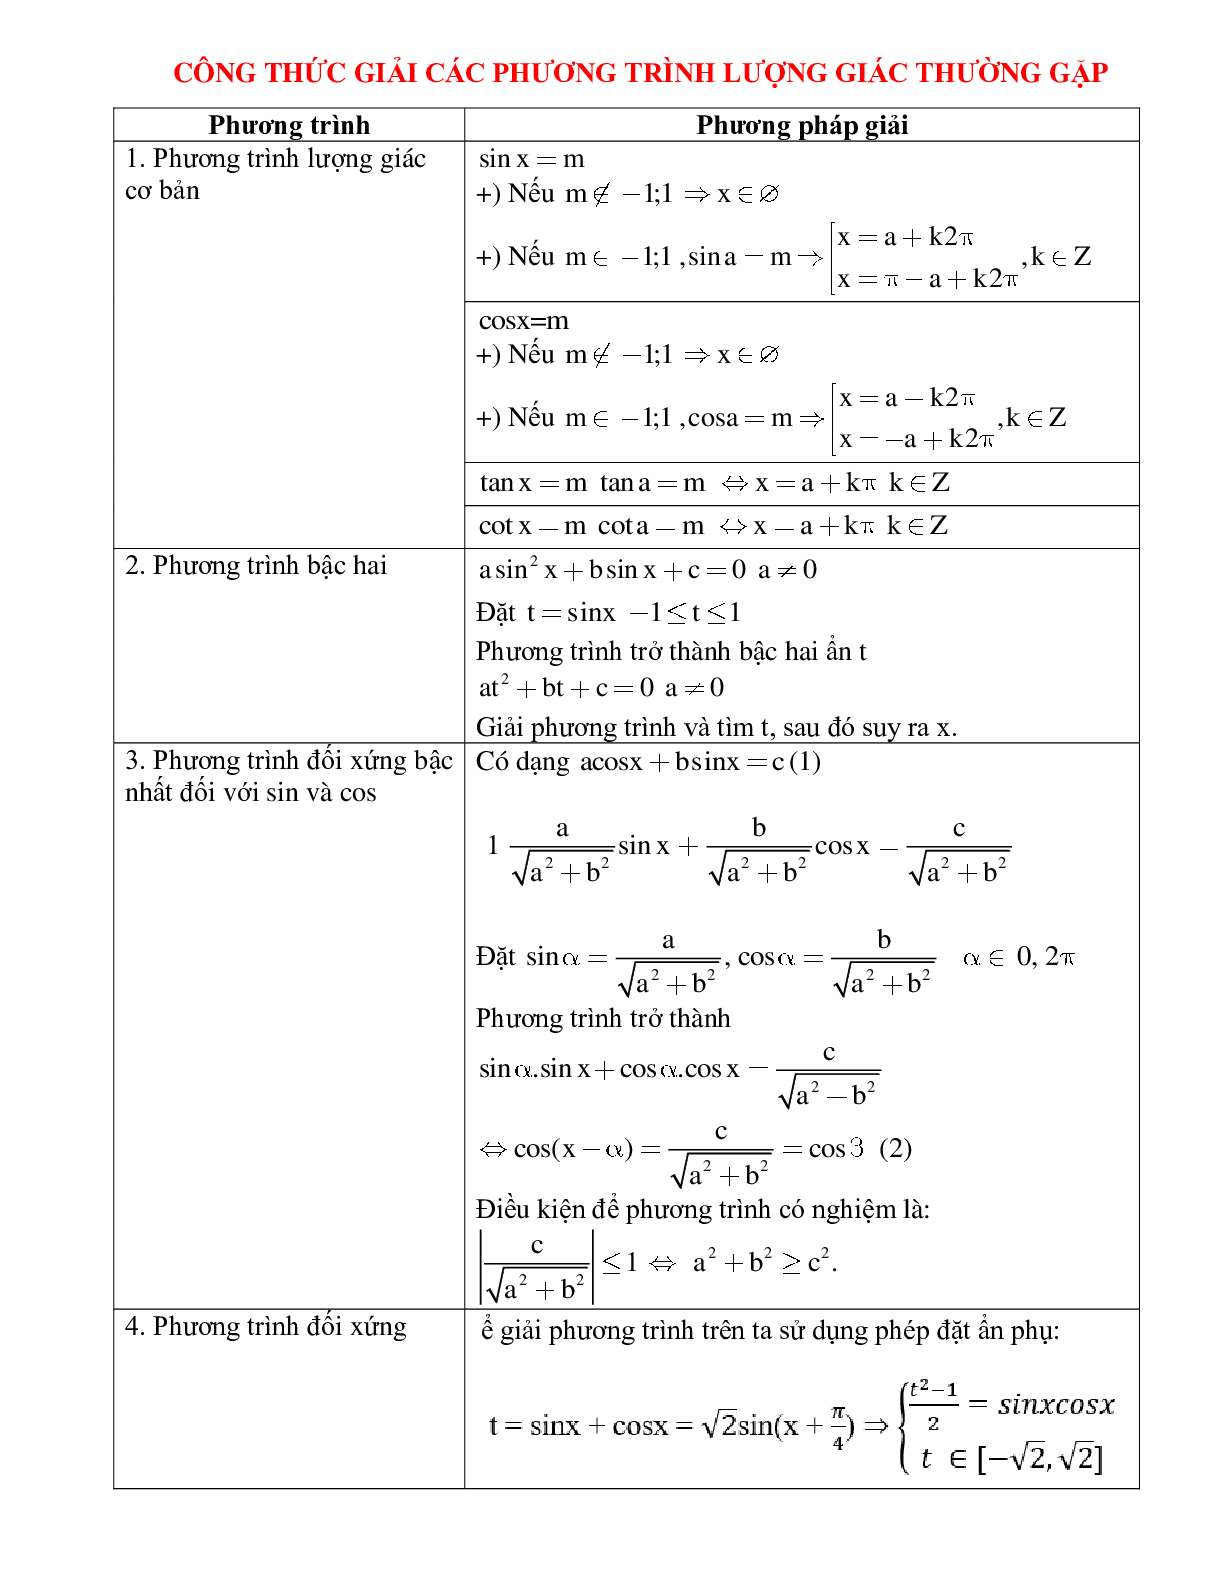 Công thức giải các phương trình lượng giác thường gặp (trang 1)